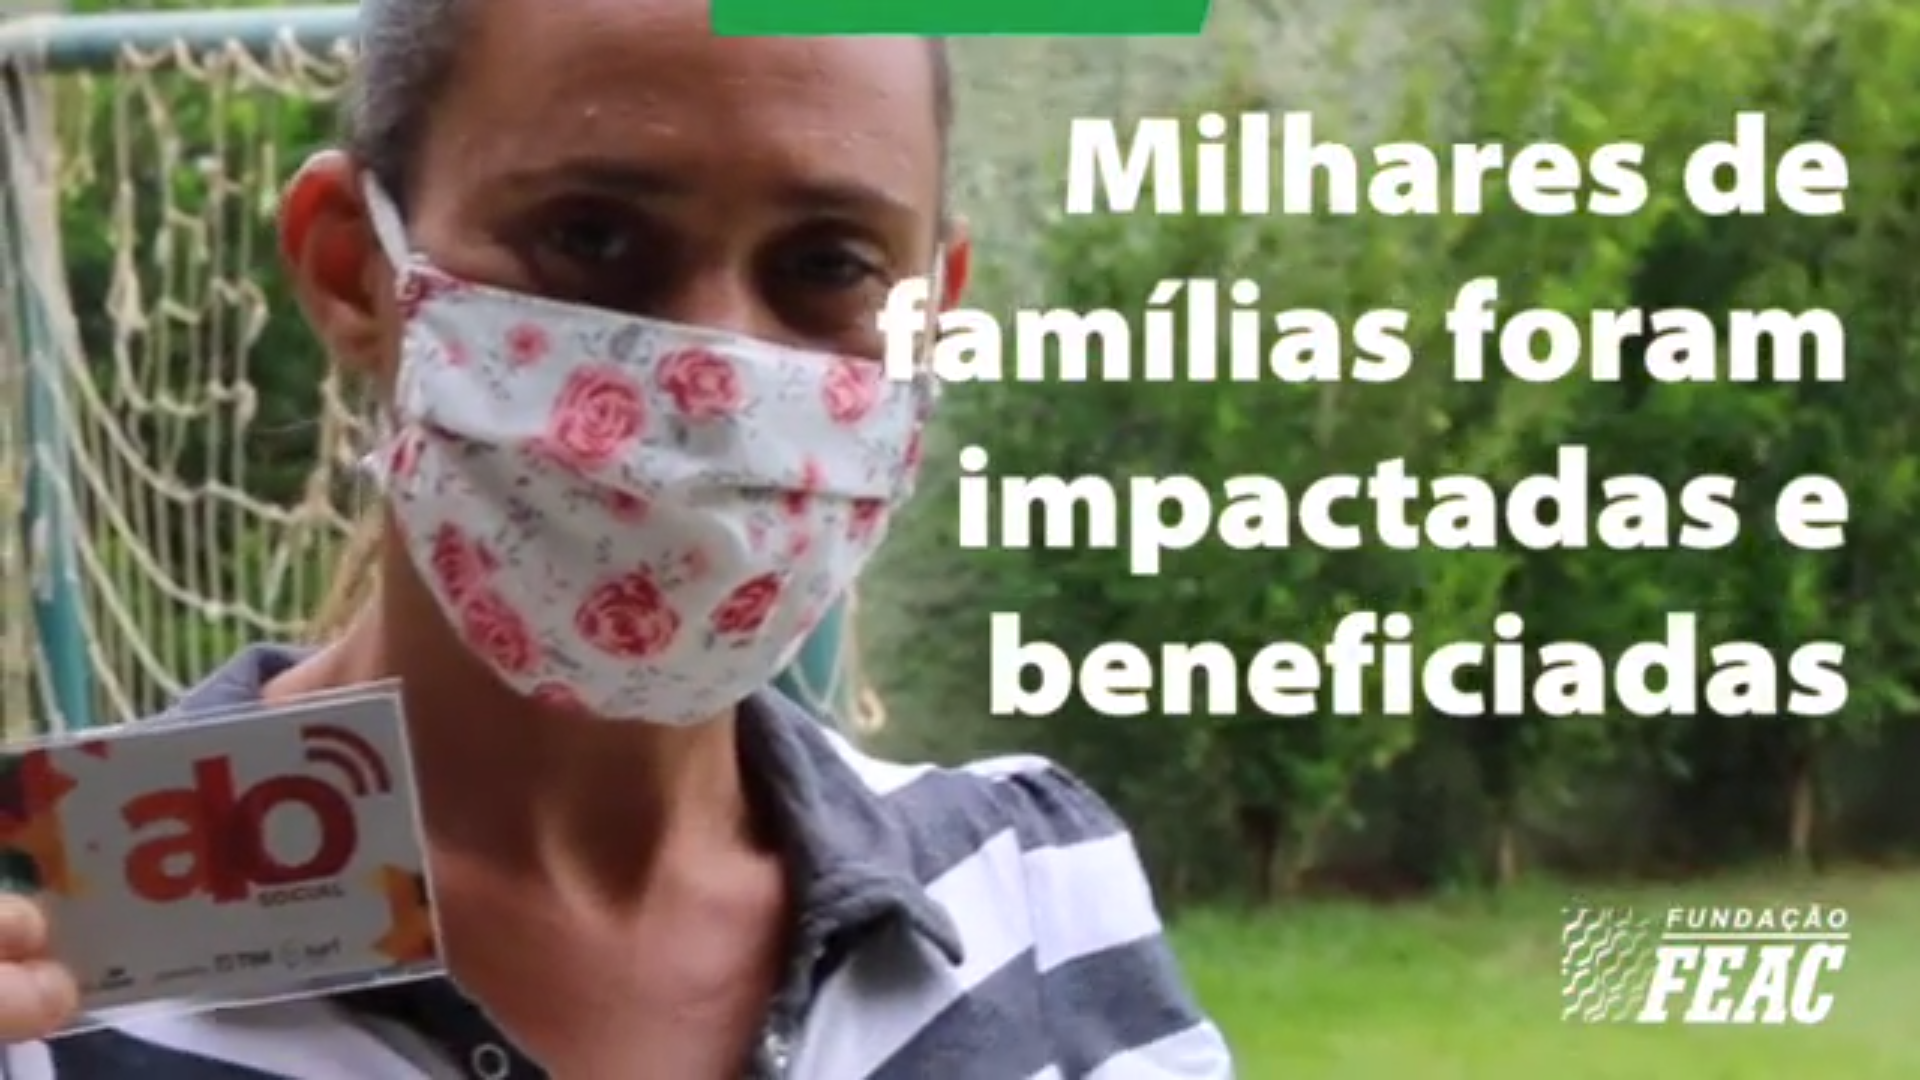 Imagem do vídeo mostra uma mulher, com máscara, segurando um cartão do Família On e o texto: "Milhares de famílias foram impactadas e beneficiadas"